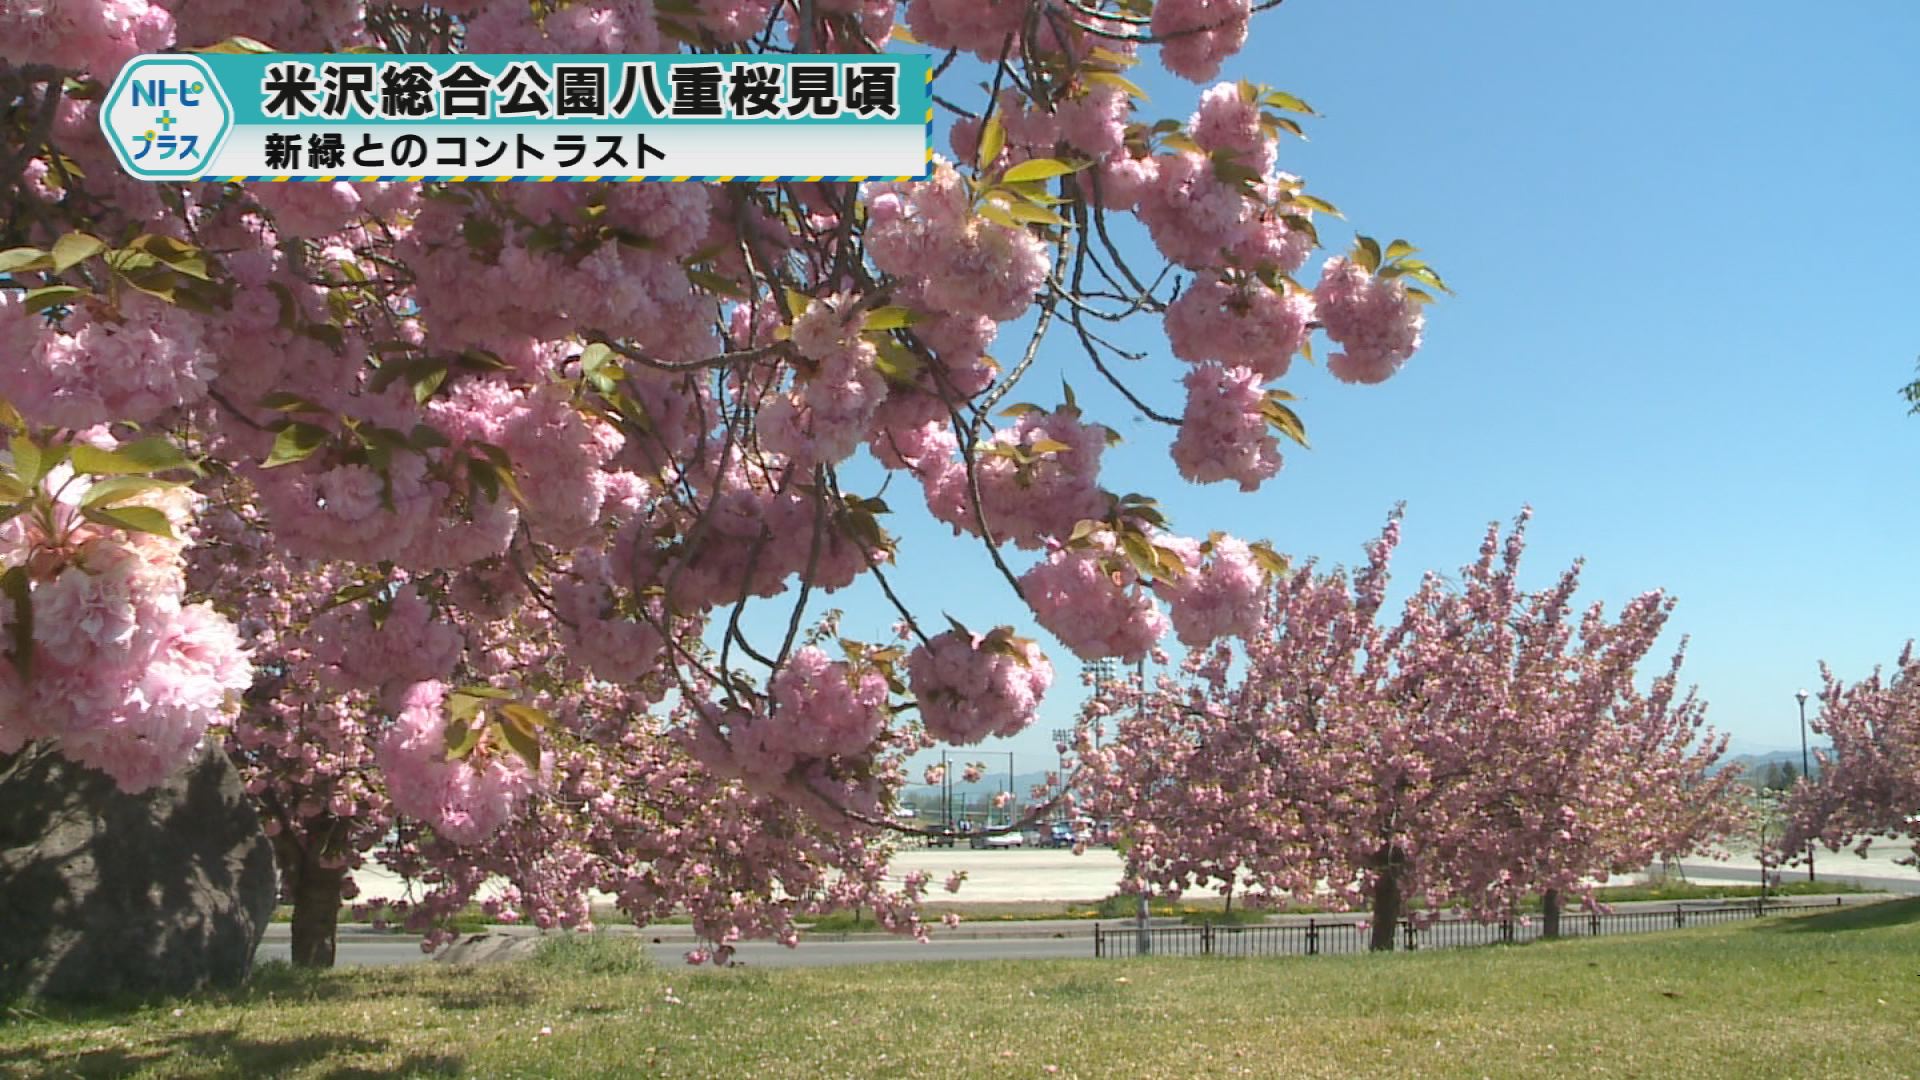 「米沢総合公園 八重桜見頃」新緑とのコントラスト